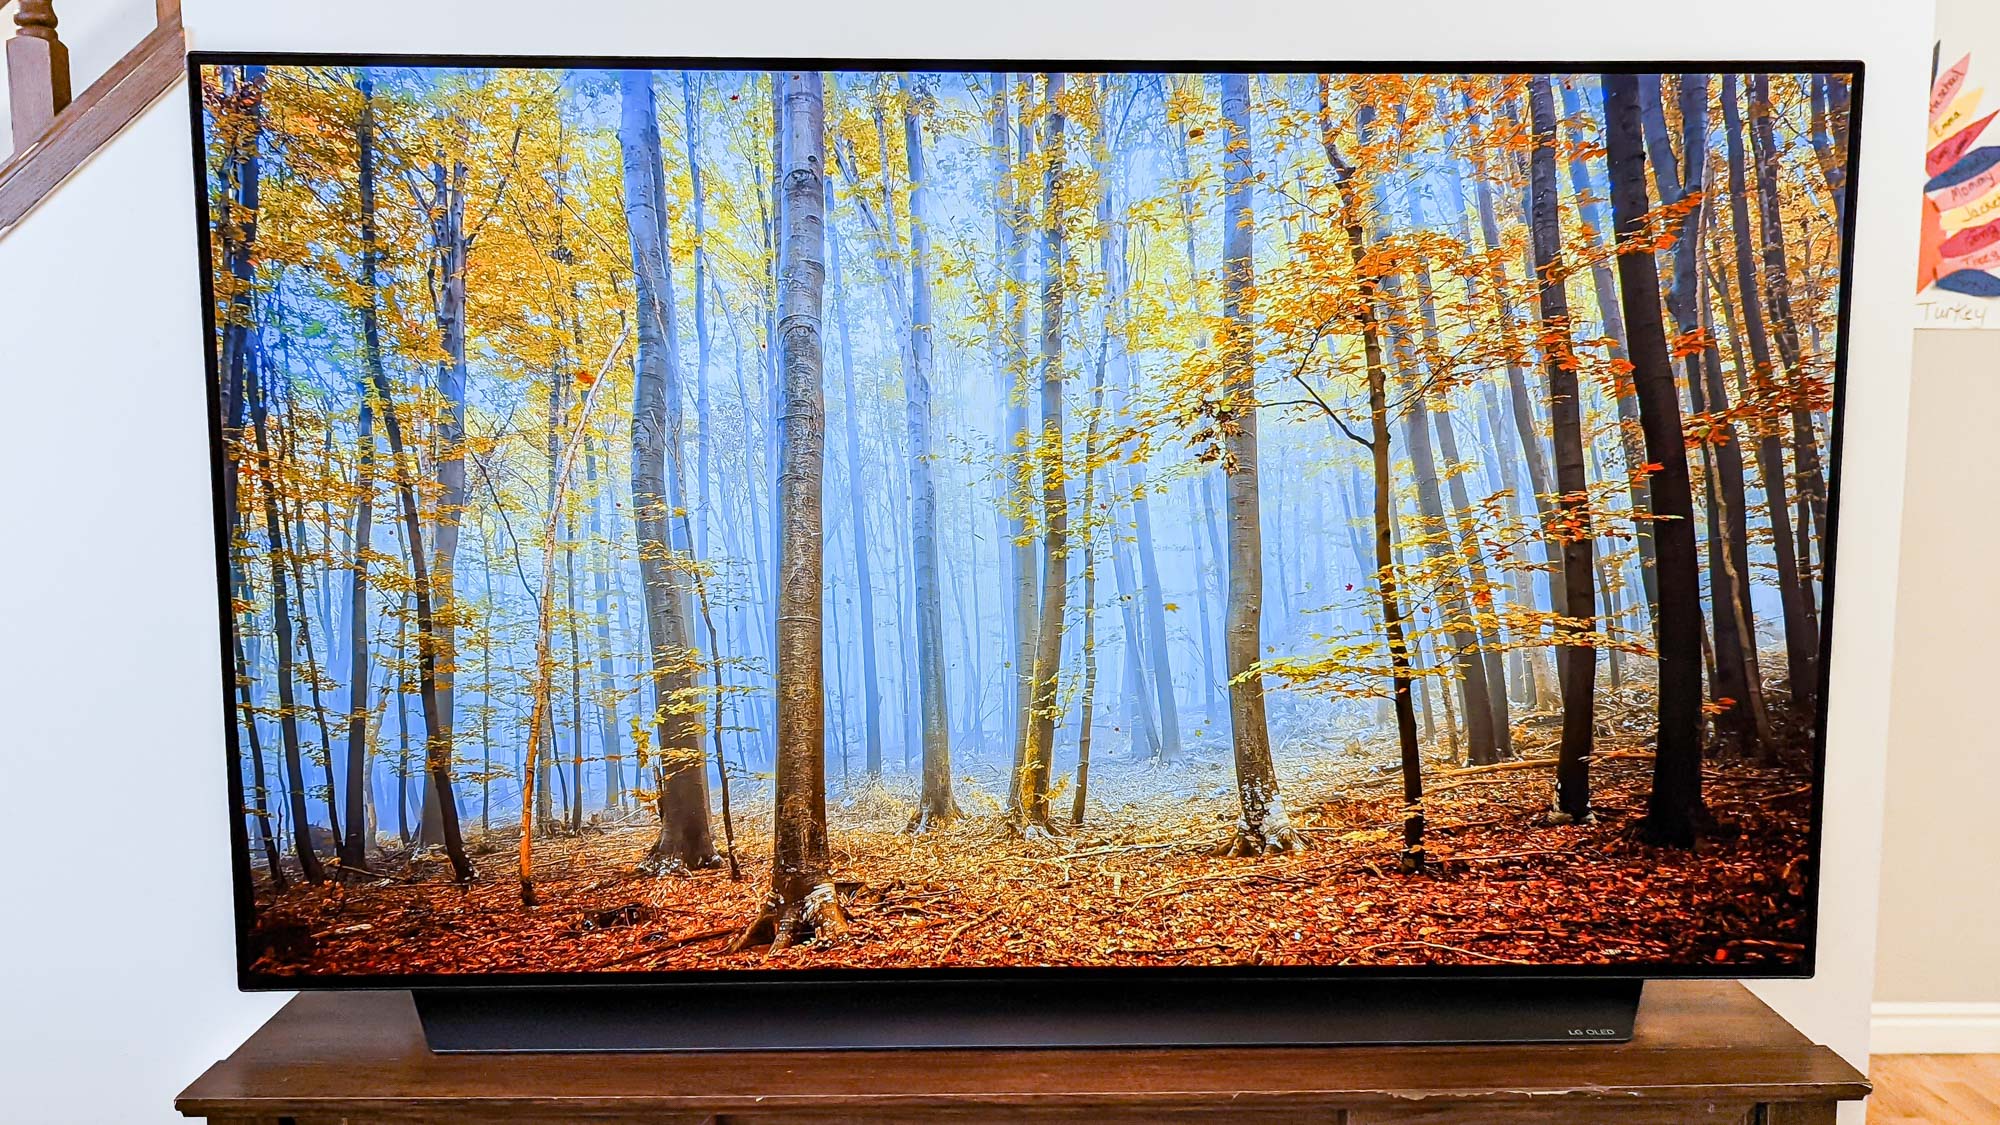 LG C1 OLED TV display in livingroom